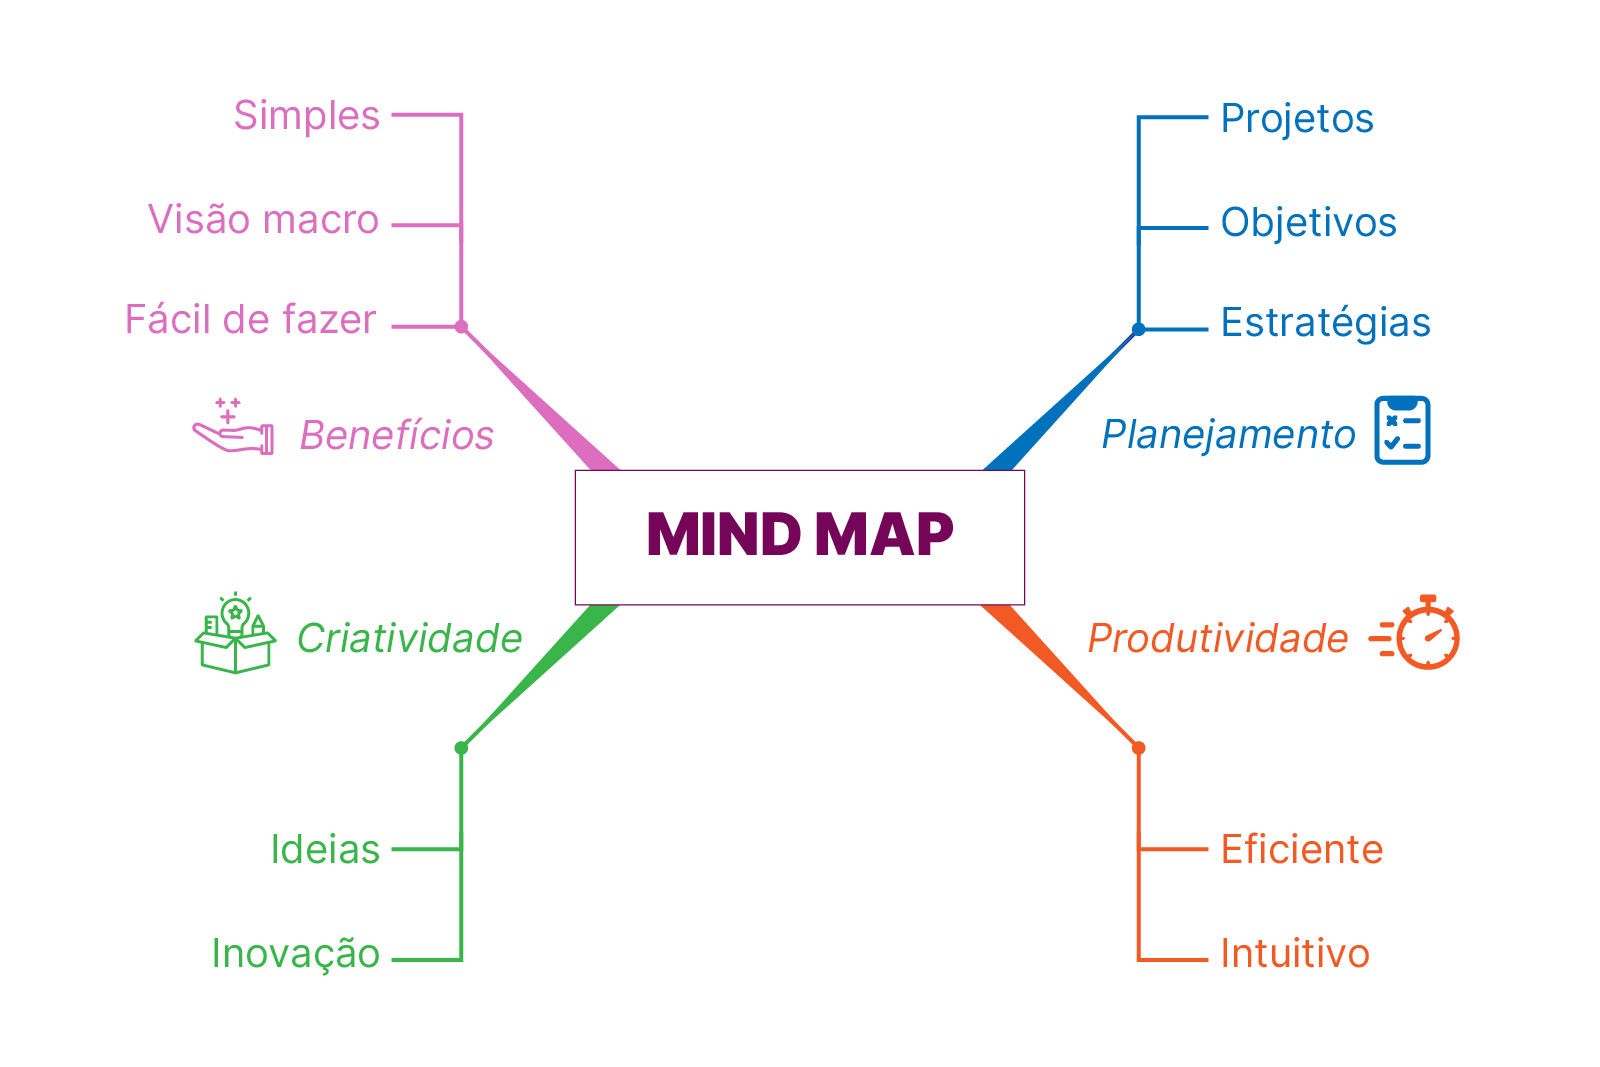 Imagem de um mapa conceitual. No centro, há a palavra “Mind map” e as linhas ligam esse termo a outros conceitos, como produtividade, criatividade, benefícios, planejamento.Abaixo de cada conceito, há outras palavras que fazem a ligação: para produtividade, há as palavras “eficiente” e “intuitivo”; para criatividade, “ideias” e “inovação”; para benefícios, “simples”, “fácil de fazer”, “visão macro”; e para planejamento, as palavras “projetos”; “objetivos” e “estratégias”.